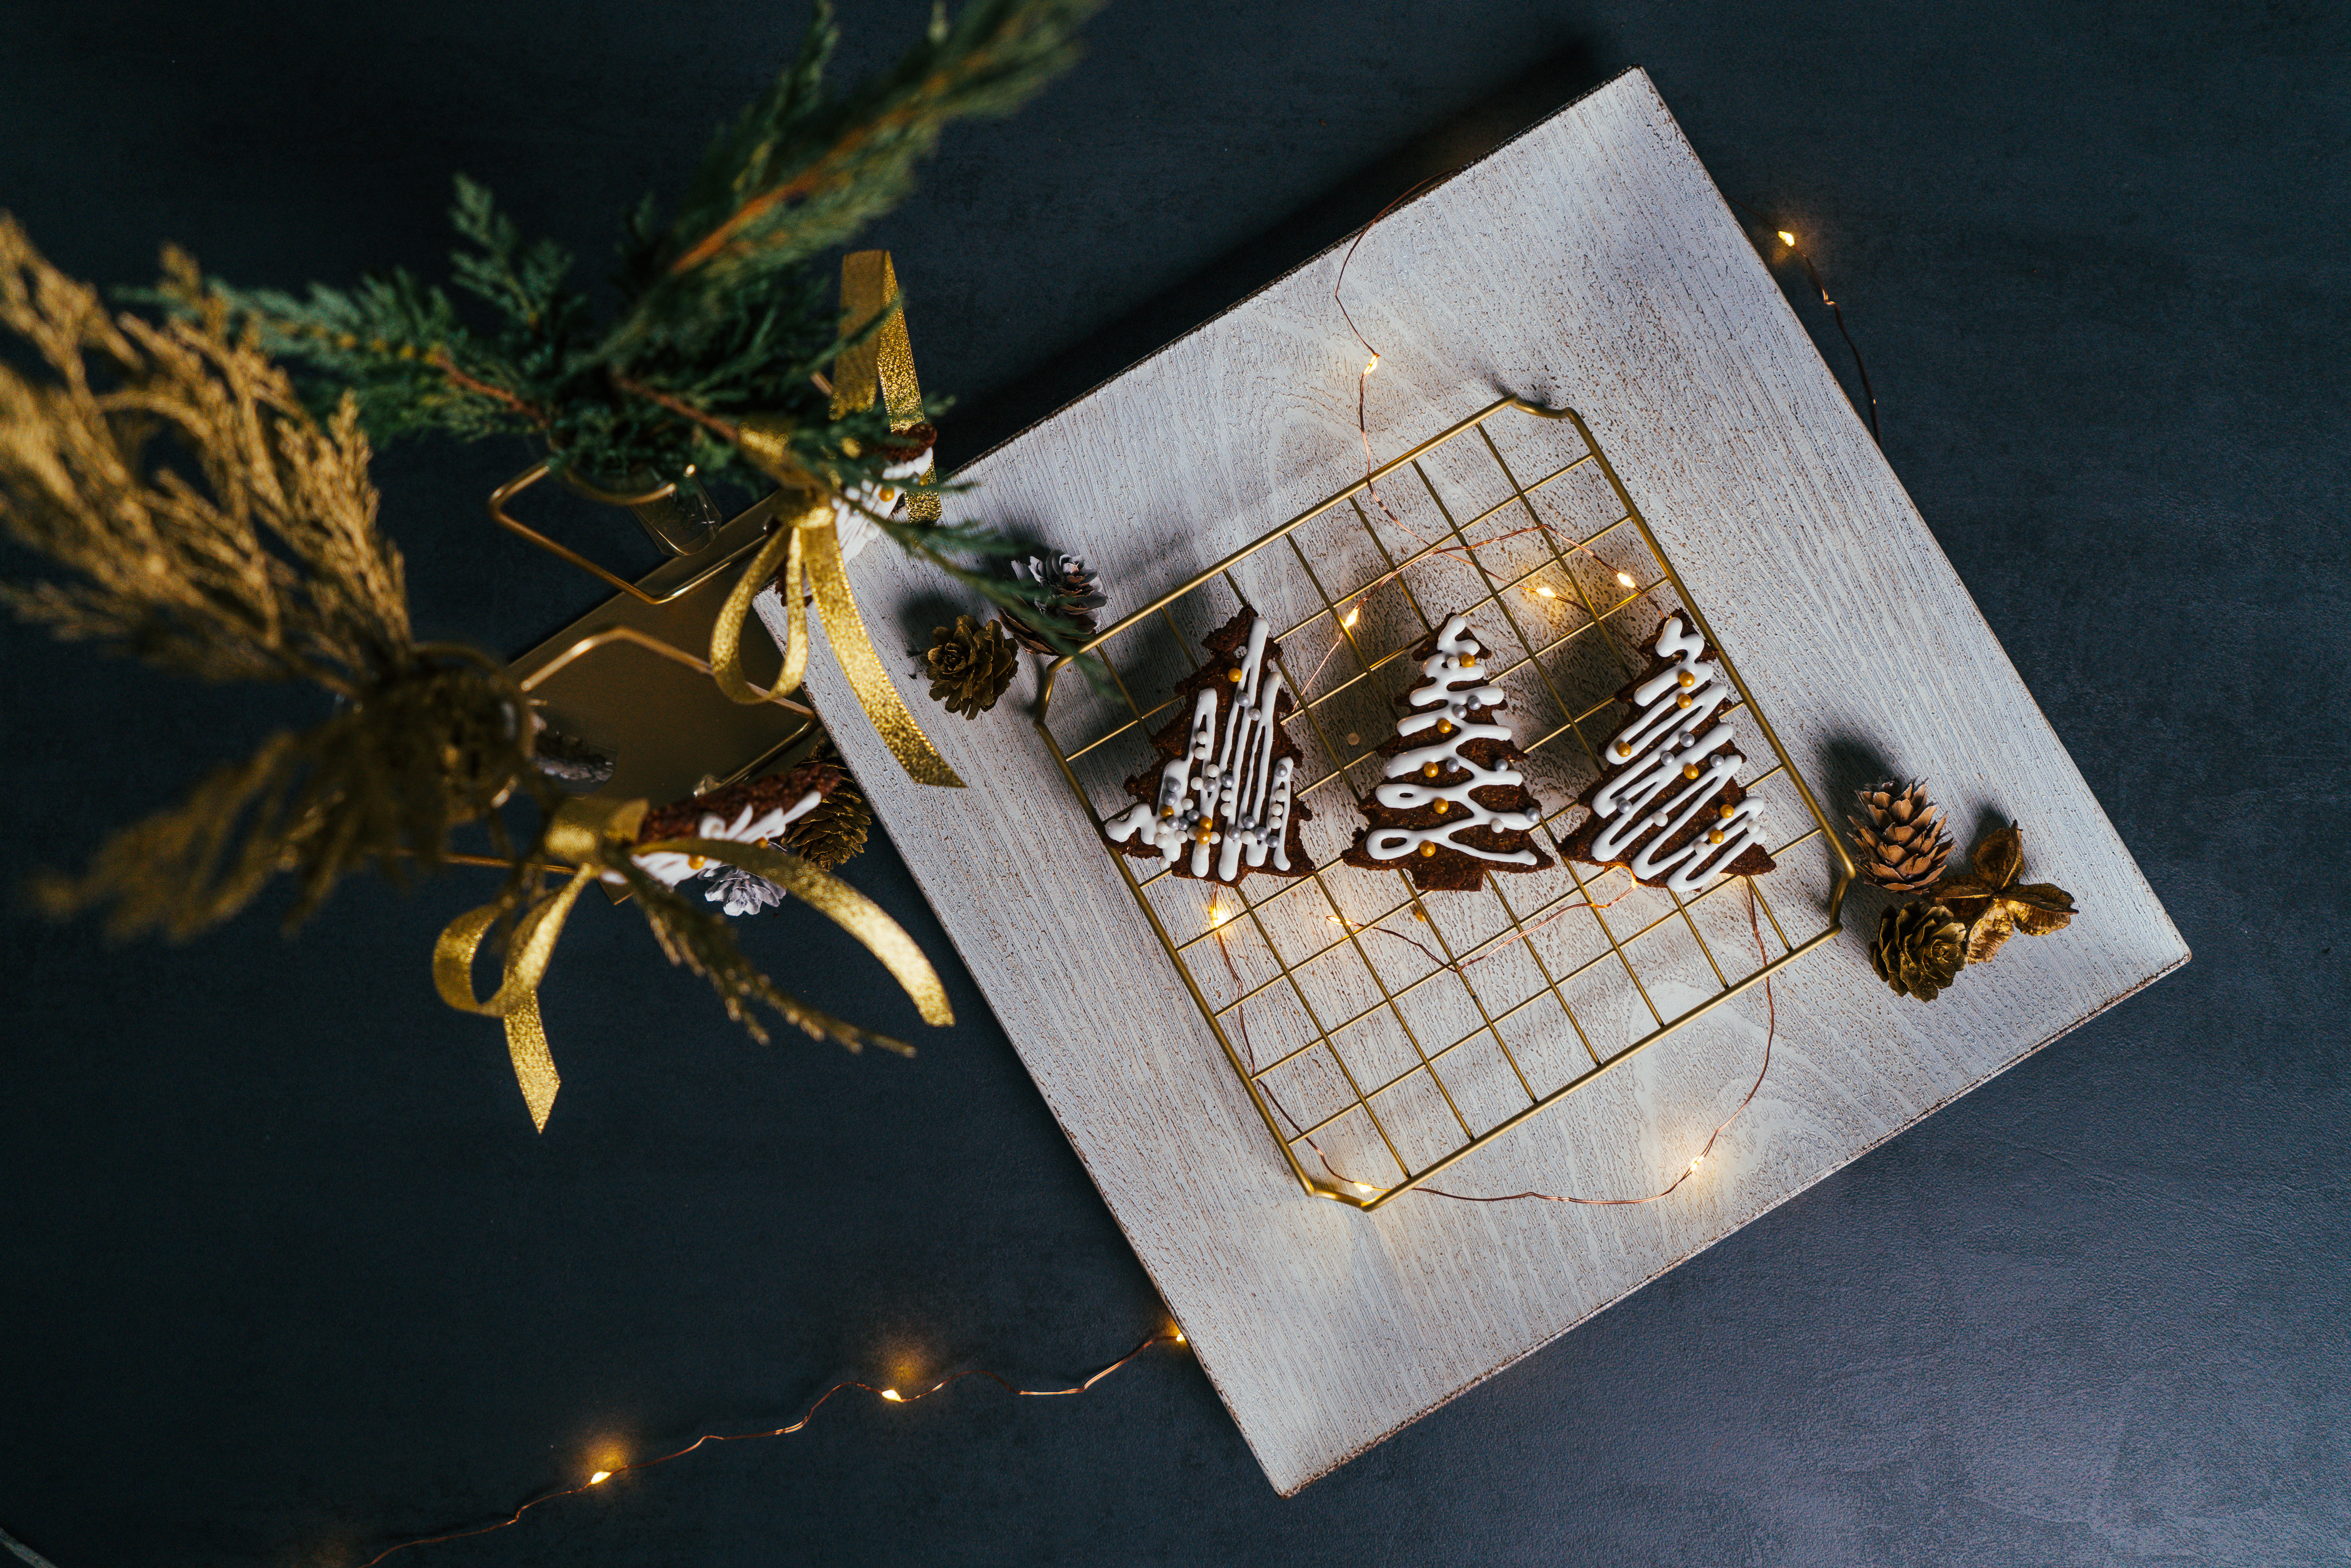 las mejores ideas sobre como decorar la casa en navidad, adornos navideños DIY originales paso a paso, fotos de galletas 